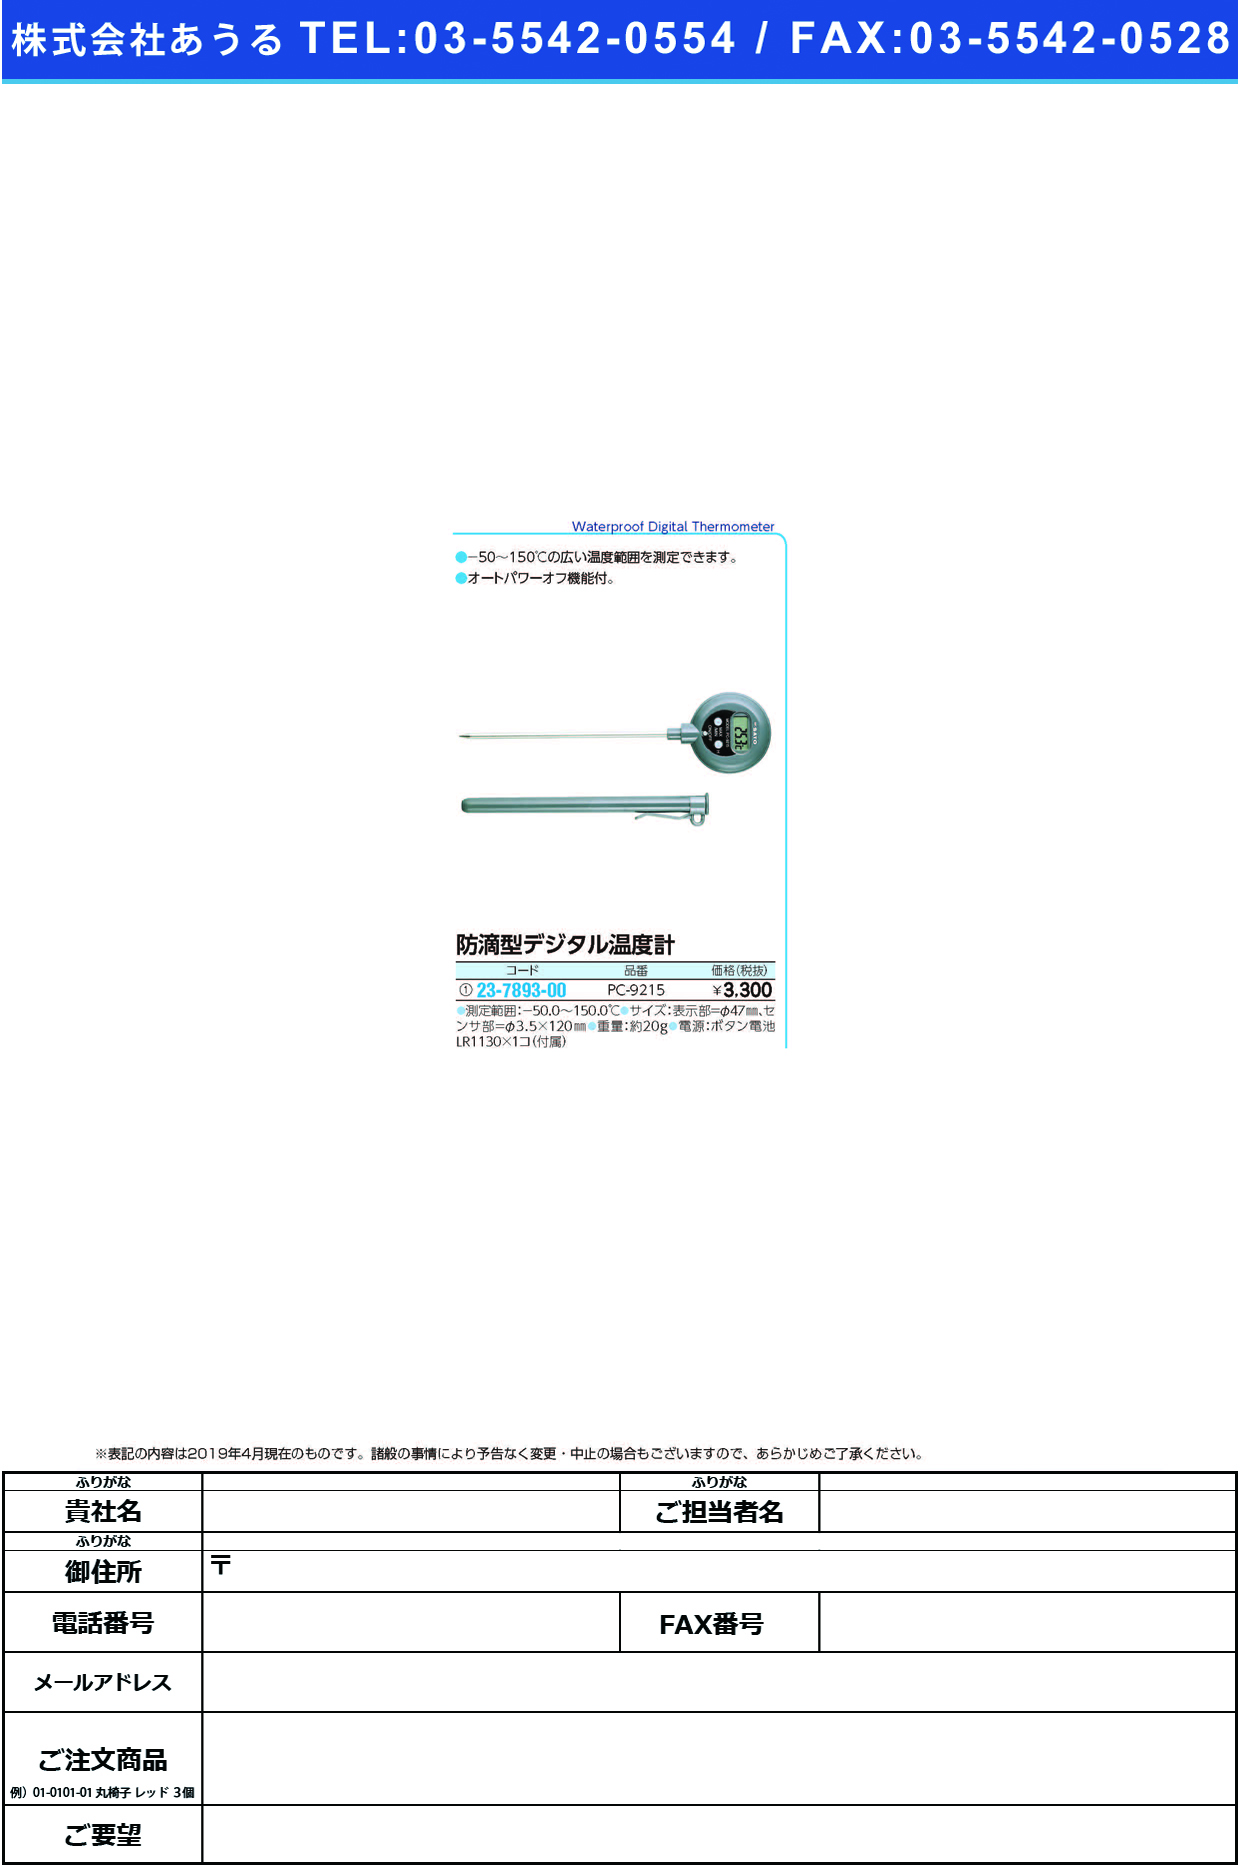 (23-7893-00)防滴型デジタル温度計 PC-9215 ﾎﾞｳﾃｷｶﾞﾀﾃﾞｼﾞﾀﾙｵﾝﾄﾞｹｲ【1個単位】【2019年カタログ商品】